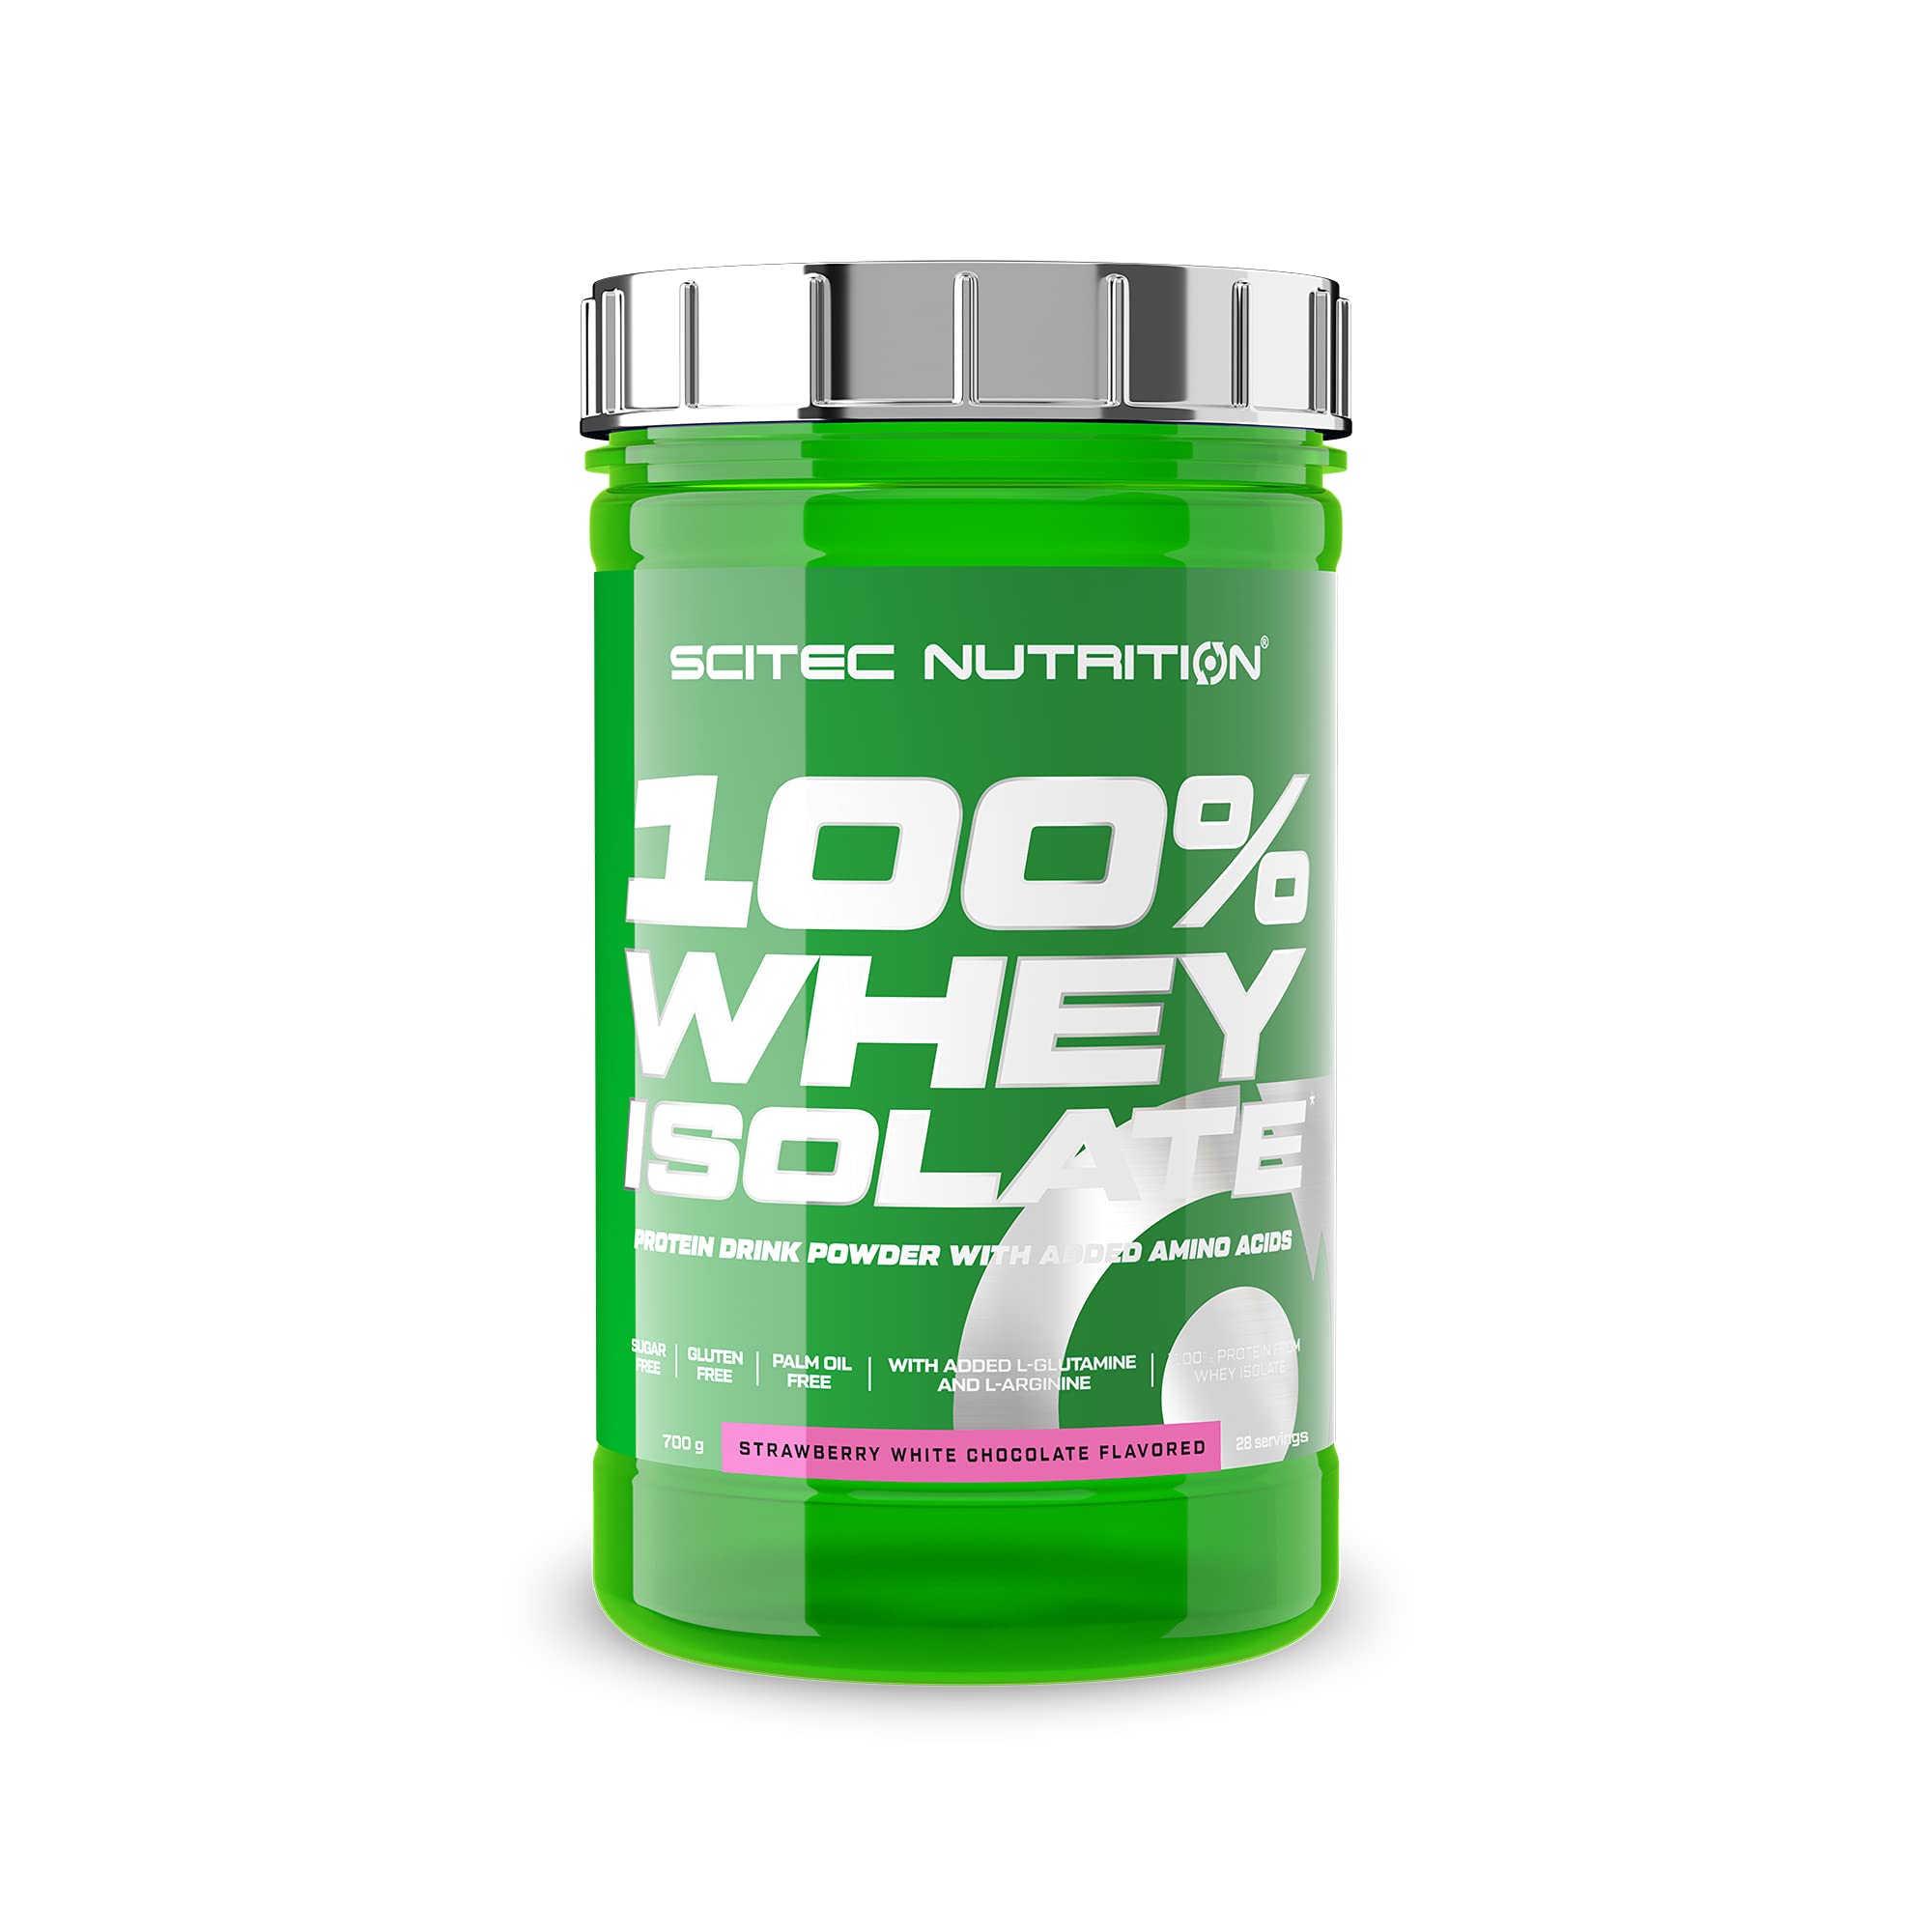 Scitec Nutrition 100% Whey Isolate - Reine Proteinleistung mit BCAAs - Glutamin & Arginin - Zucker- & Glutenfreie Formel, 700g, Erdbeere-Weiße Schokolade